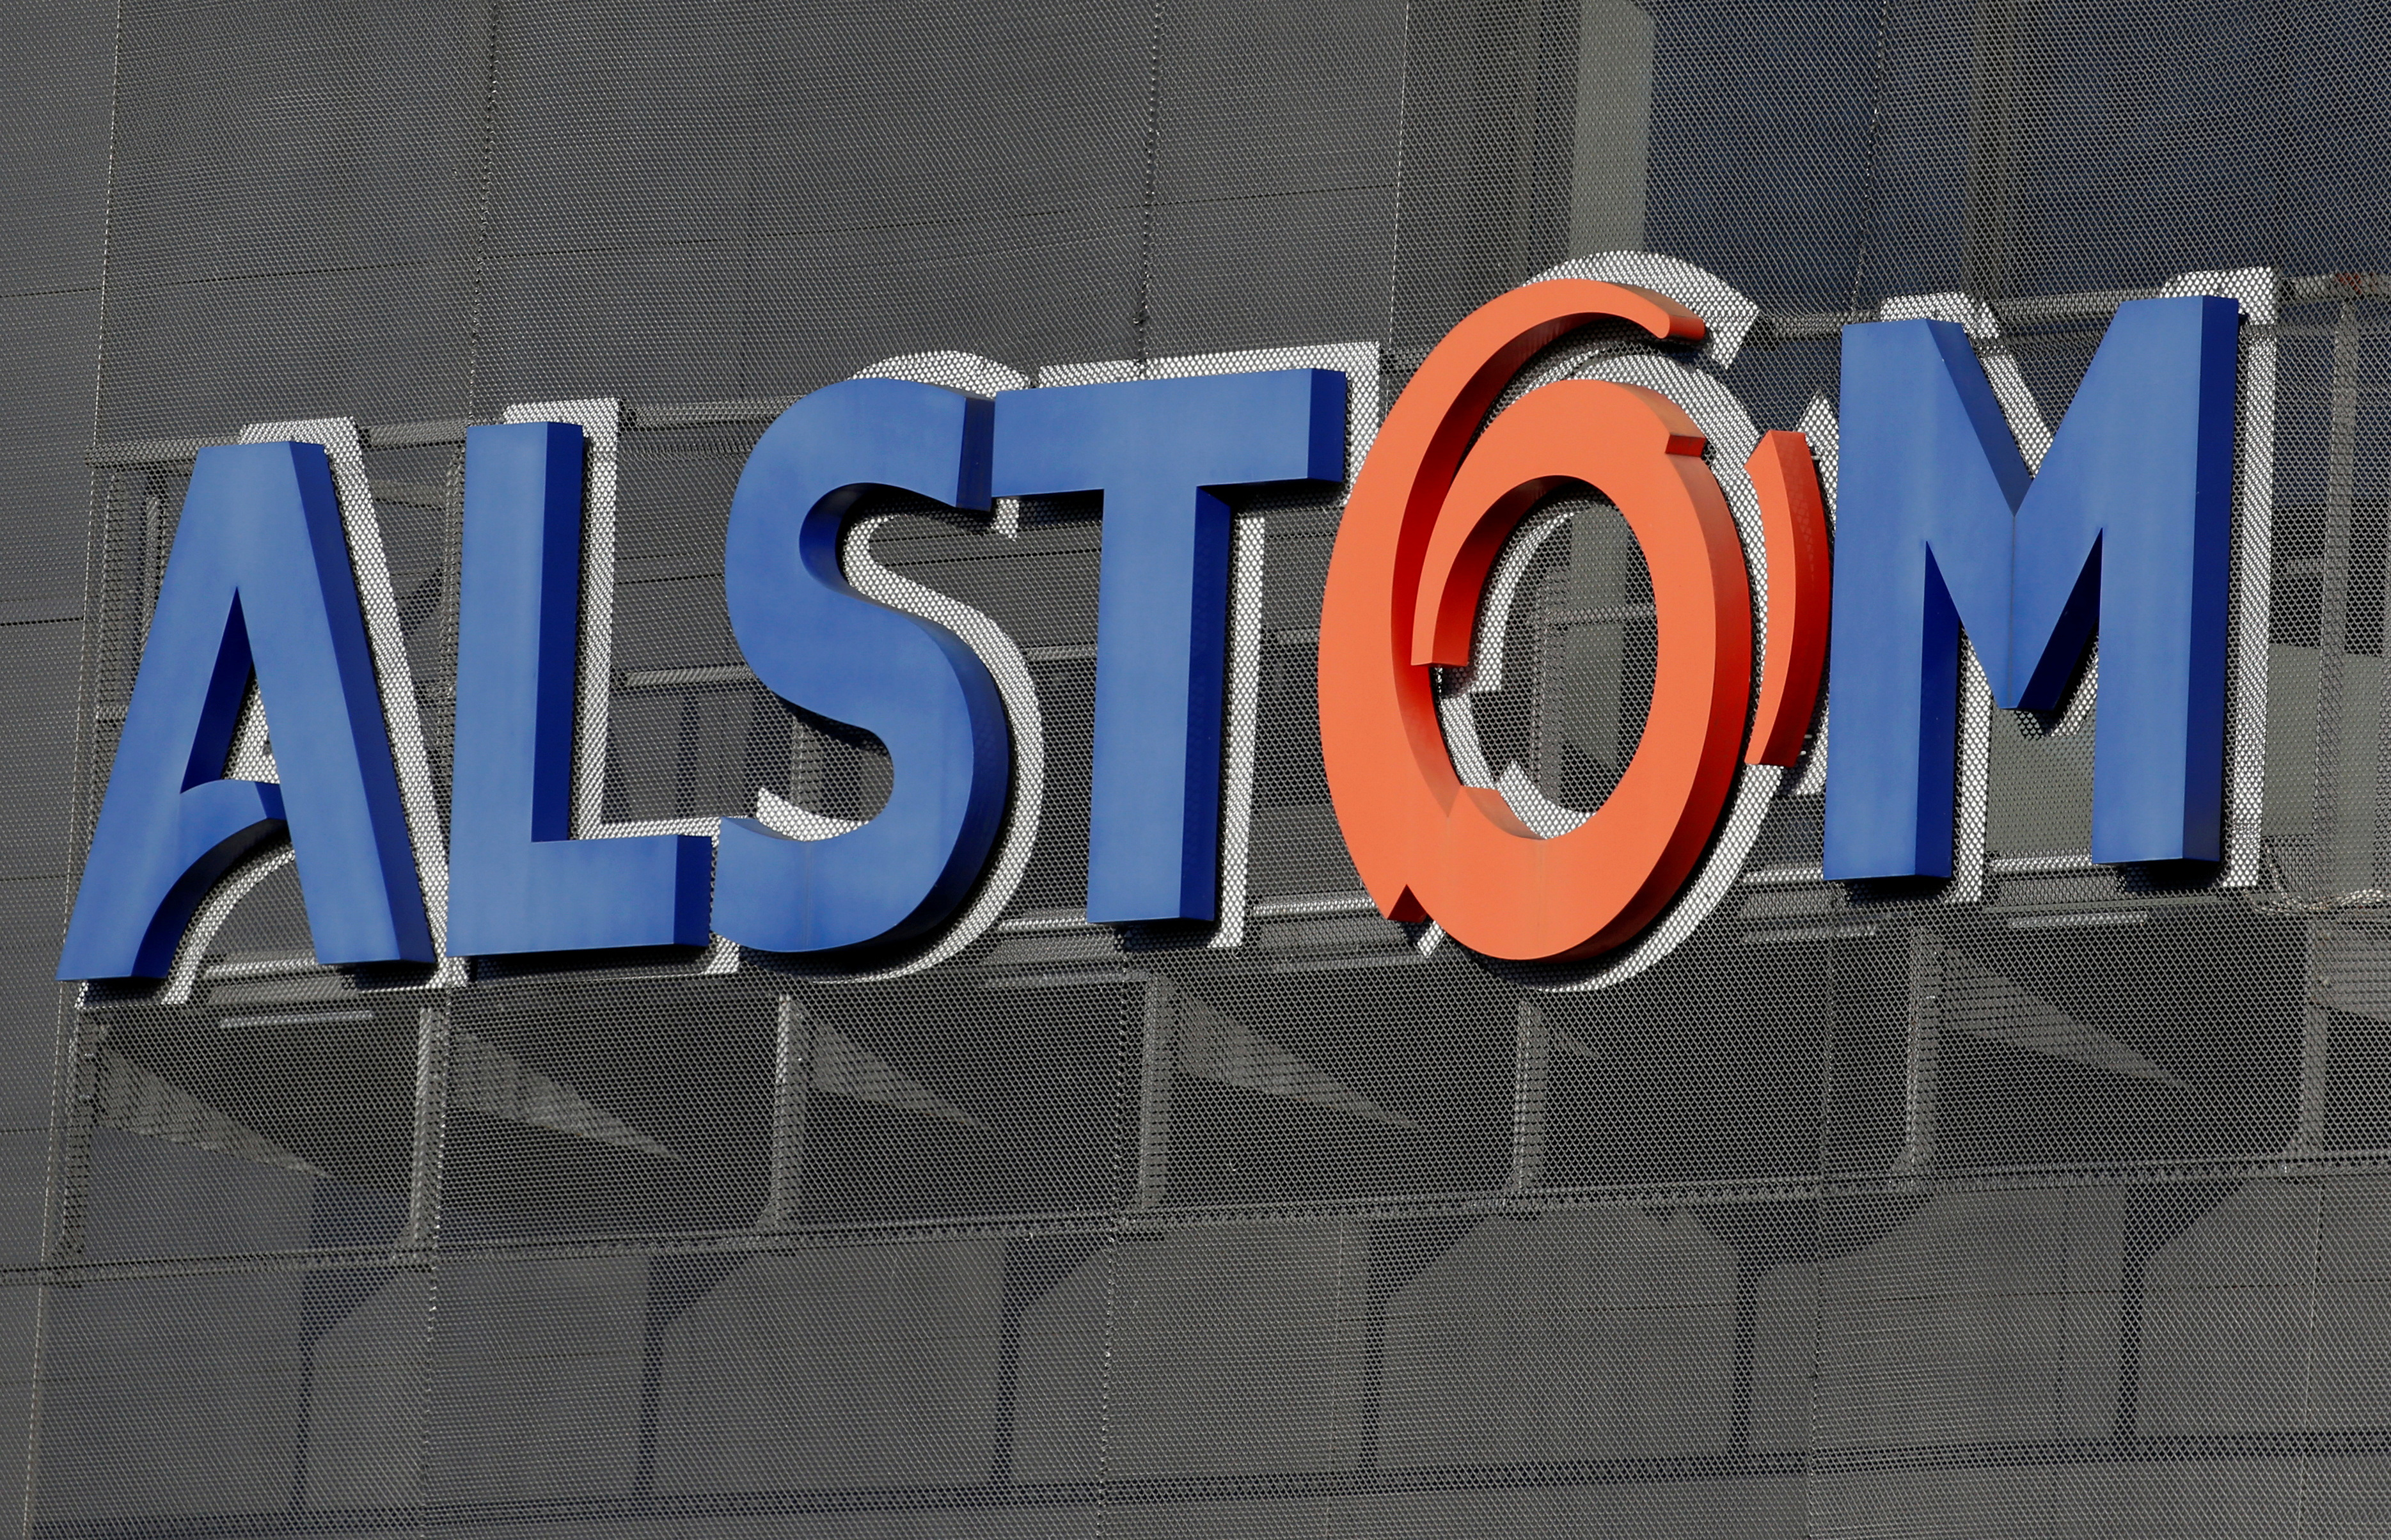 Effondrement d'un chantier au Brésil: Alstom condamné à une lourde amende